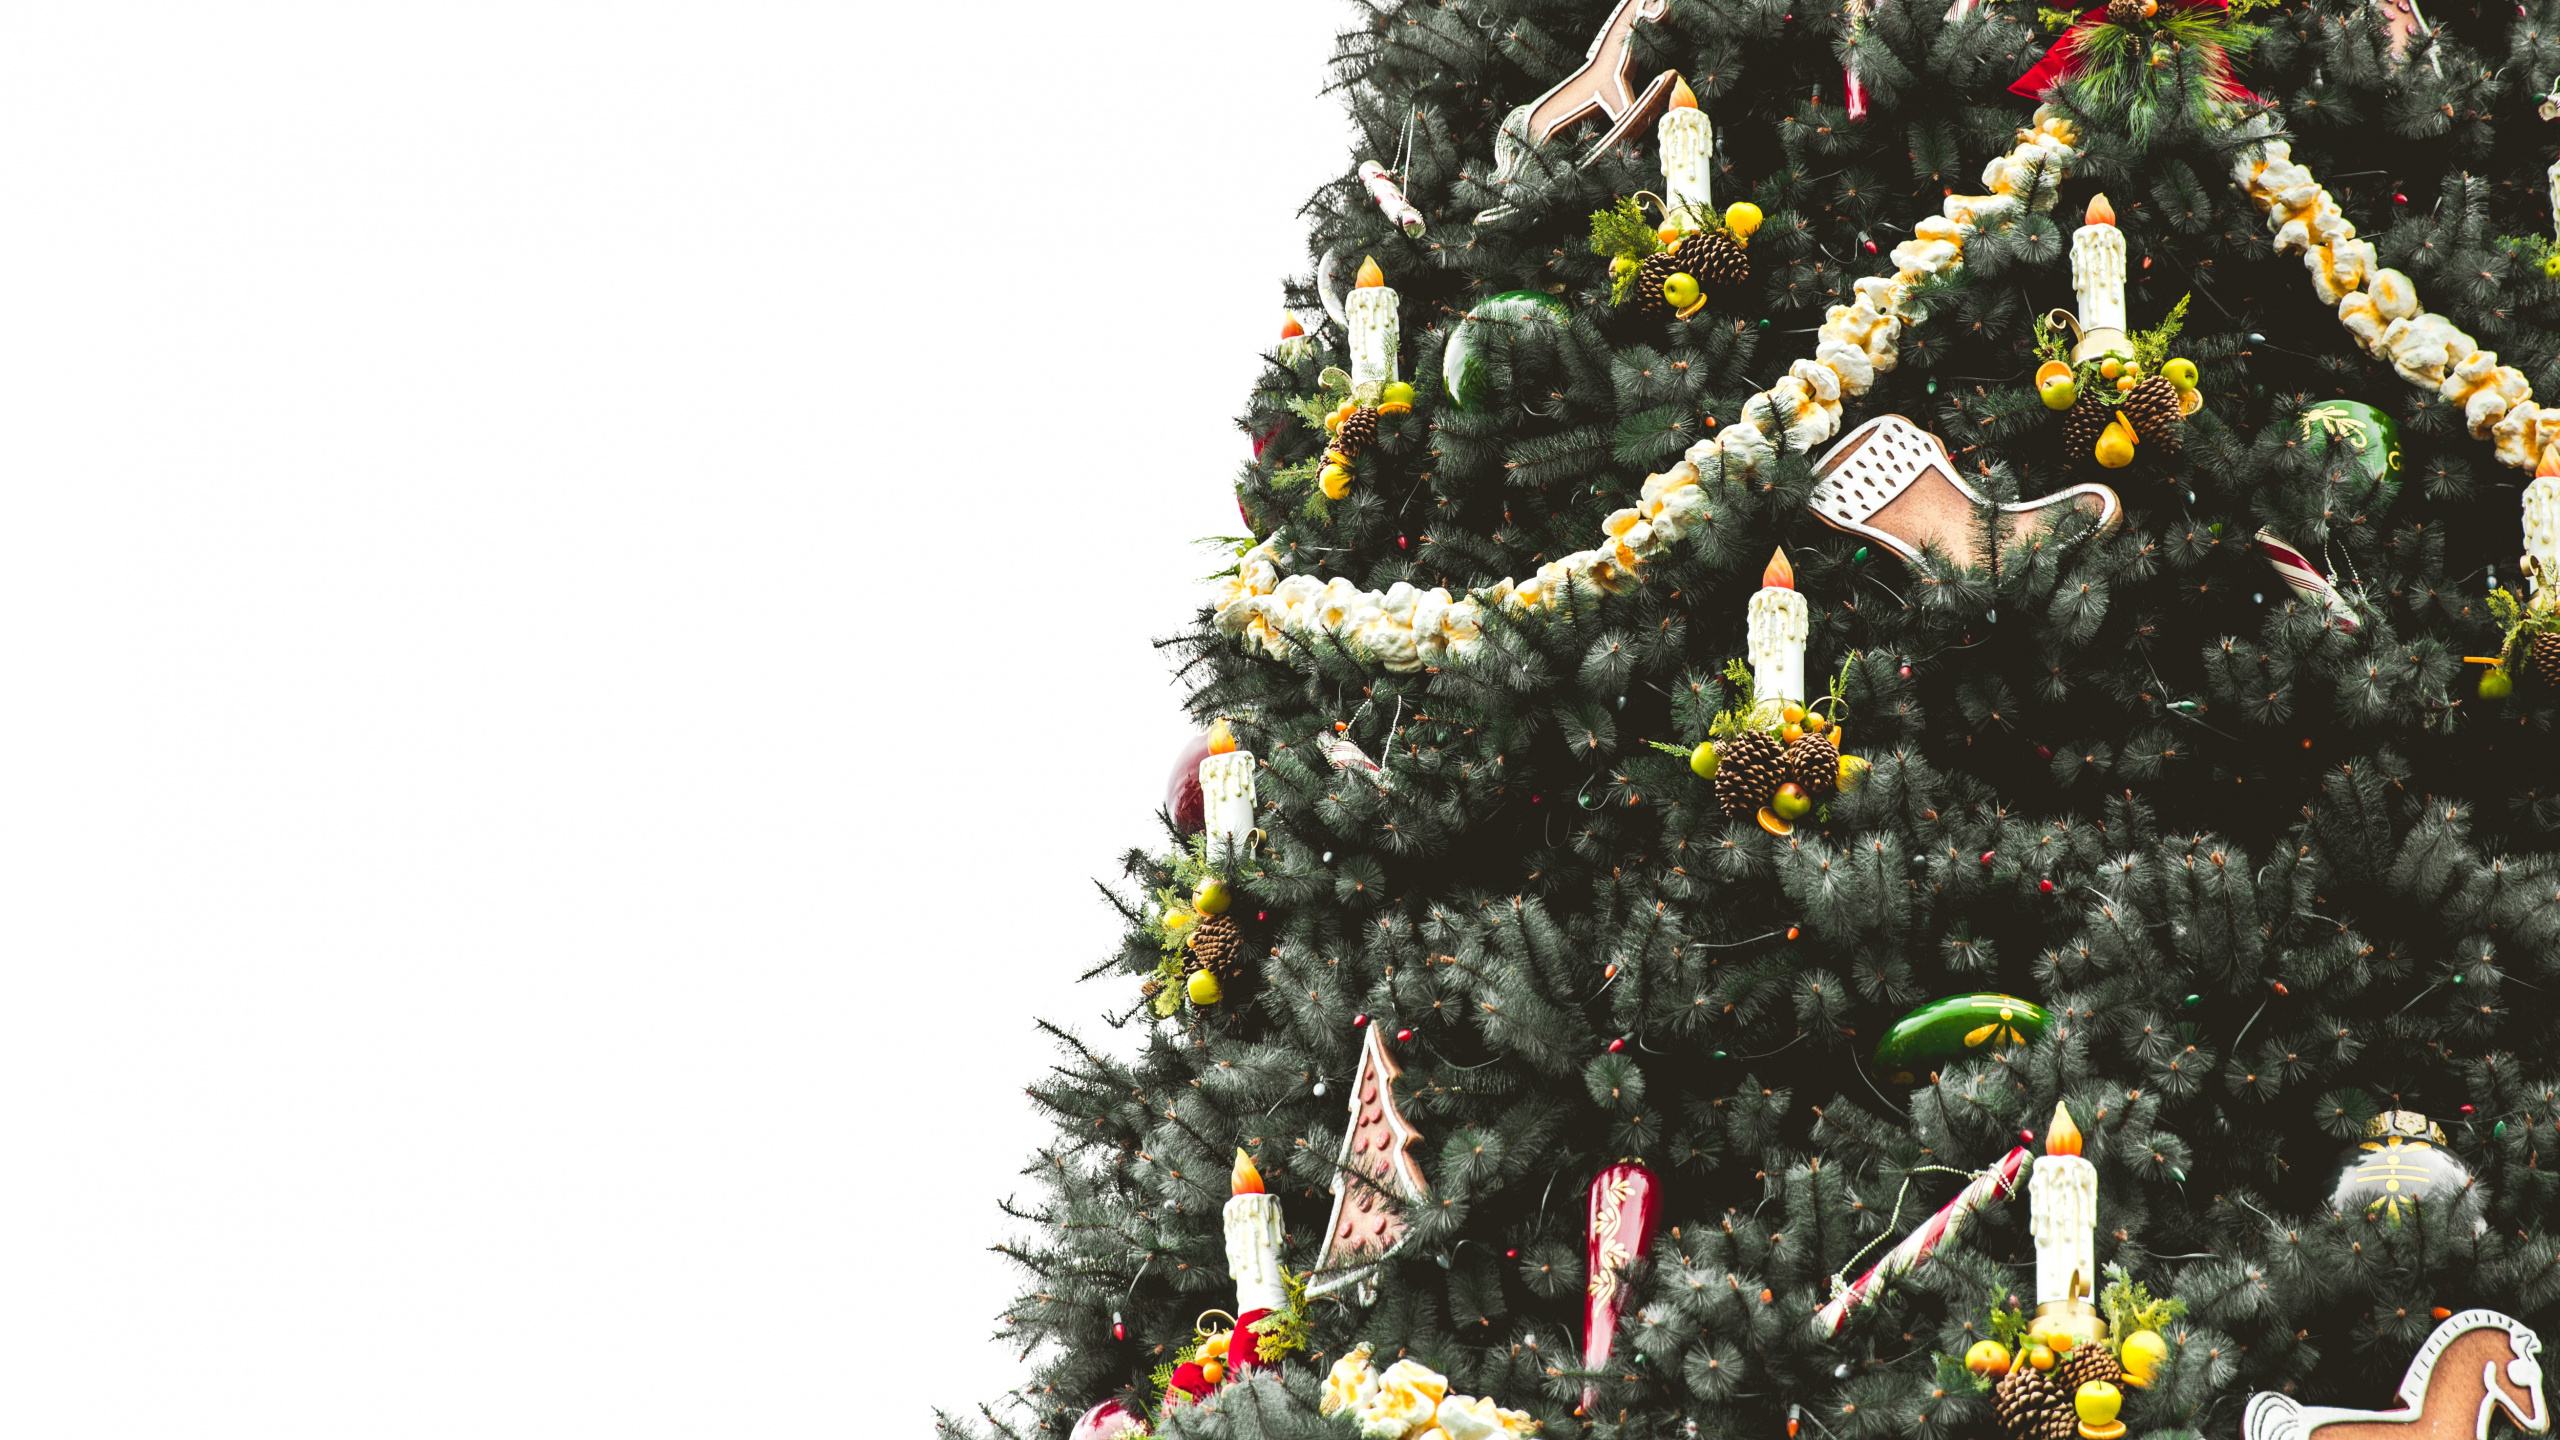 圣诞树, 圣诞节那天, 圣诞节和节日, 木本植物, Evergreen 壁纸 2560x1440 允许